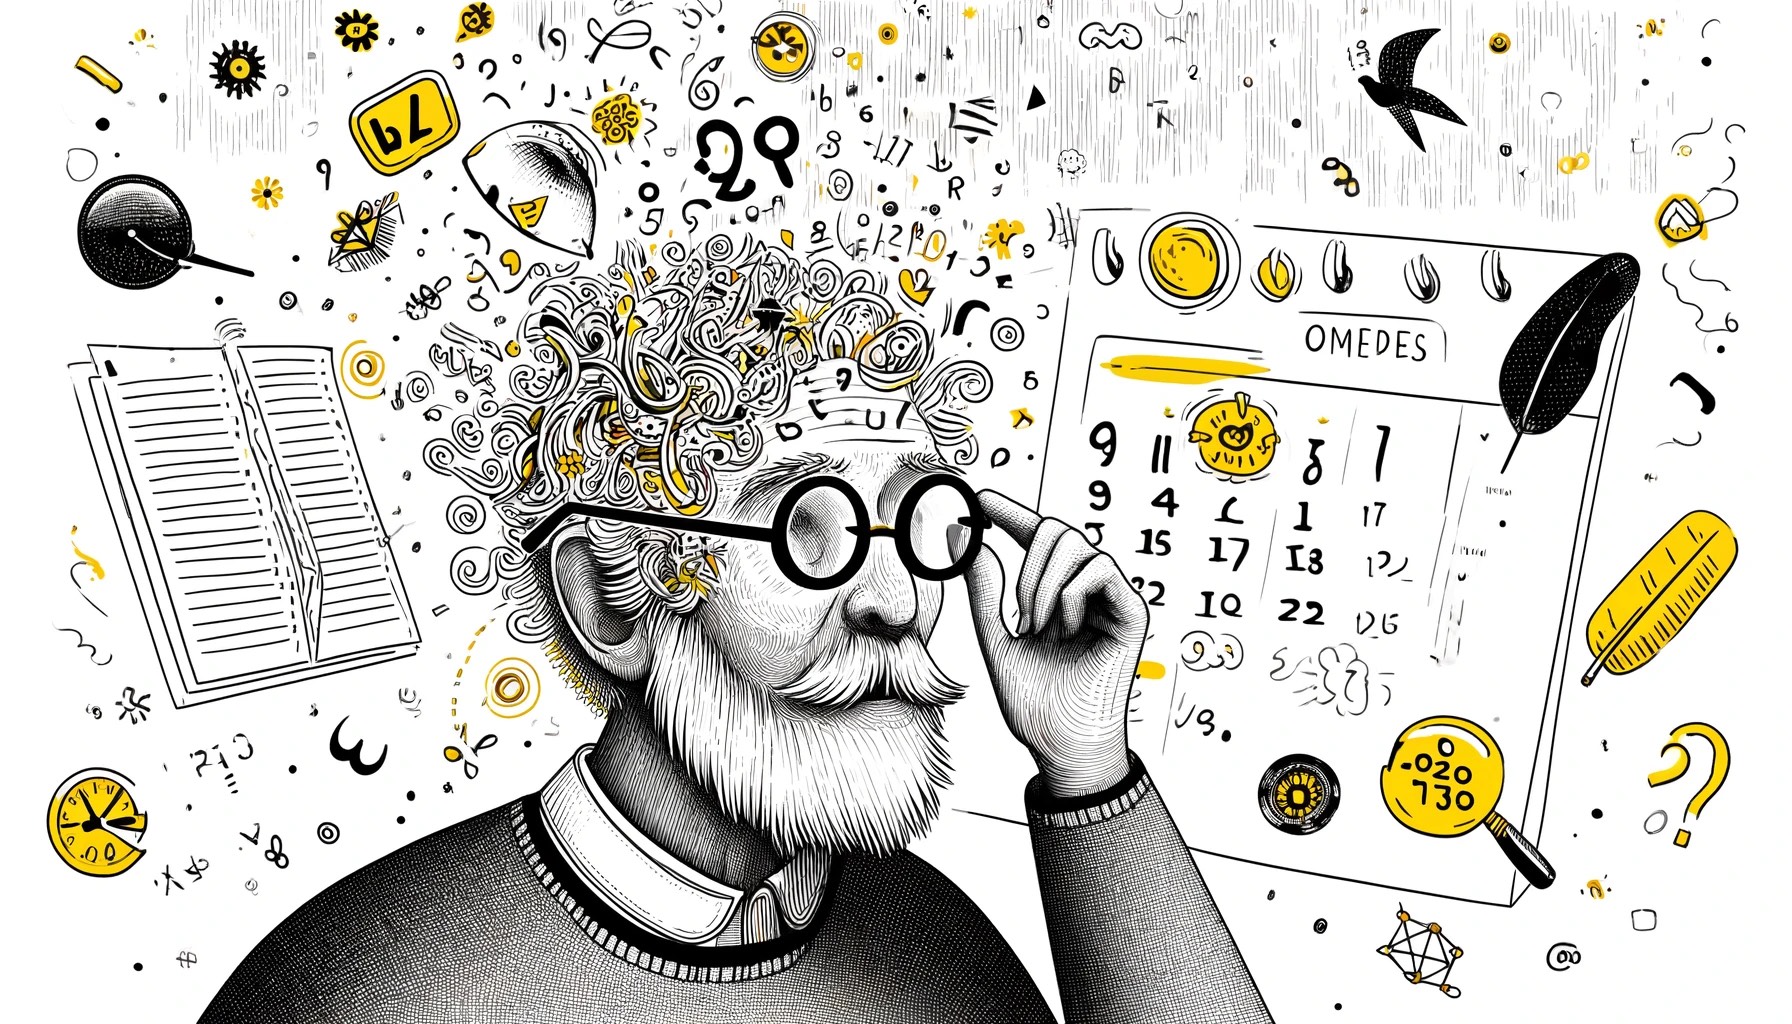 Schwarz-Weiß-Zeichnung eines älteren Mannes, der spielerisch nach seiner Brille auf seinem Kopf sucht, umgeben von schwebenden Wörtern, Zahlen und Daten in Unordnung, die seinen Kampf mit dem Gedächtnis symbolisieren. Ein Kalender mit gelb markierten Daten betont den Hintergrund, was auf Probleme mit der Zeitwahrnehmung hinweist